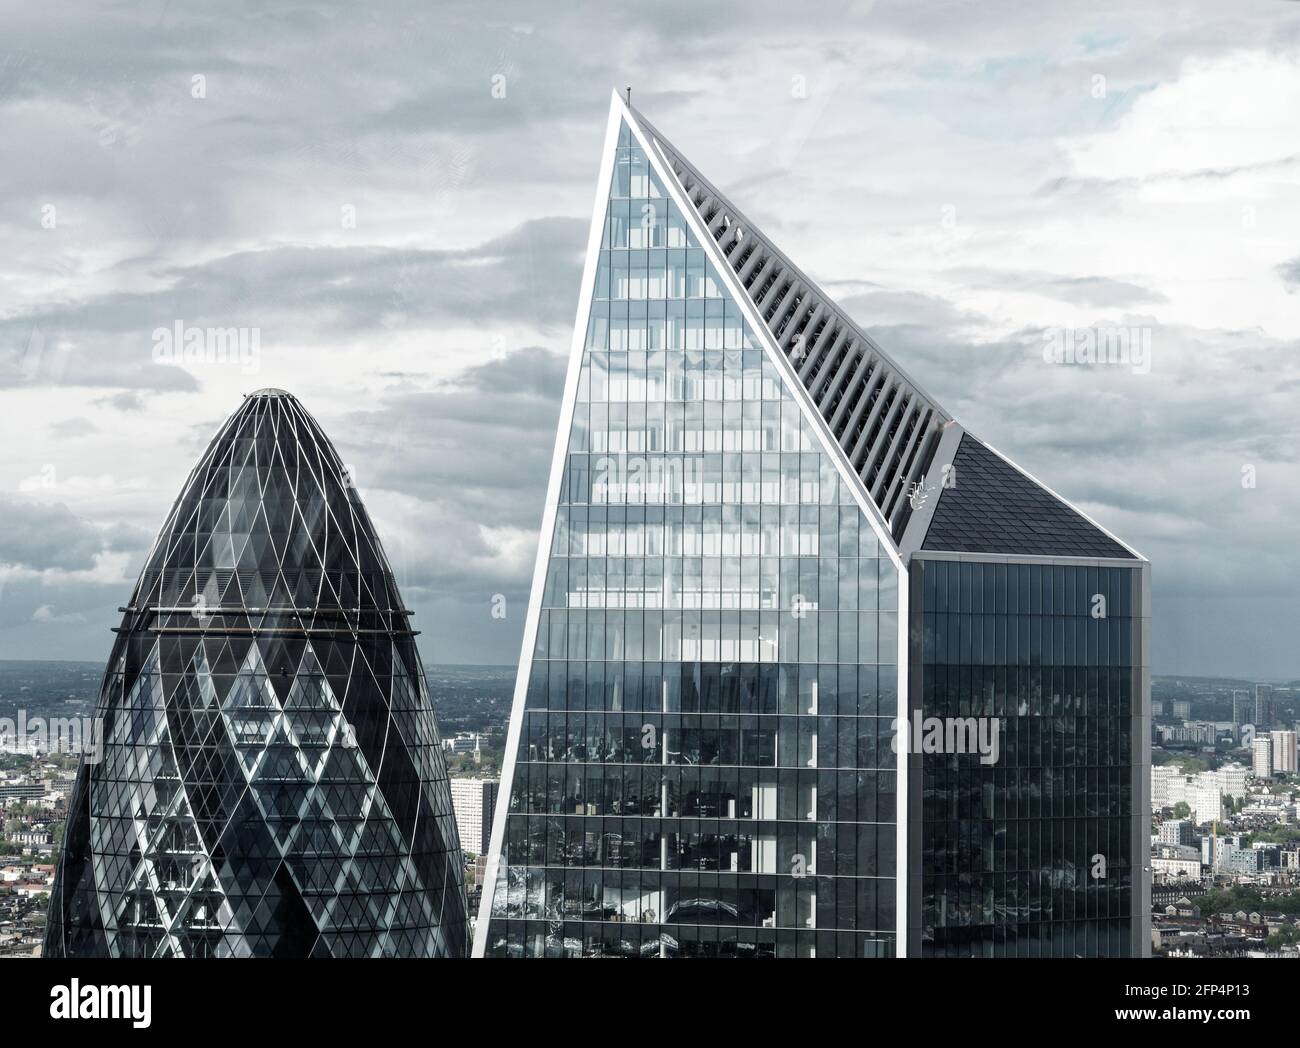 Londra, Grande Londra, Inghilterra - Maggio 18 2021: Vista elevata del Gherkin accanto ad un altro grattacielo. Desaturato. Foto Stock